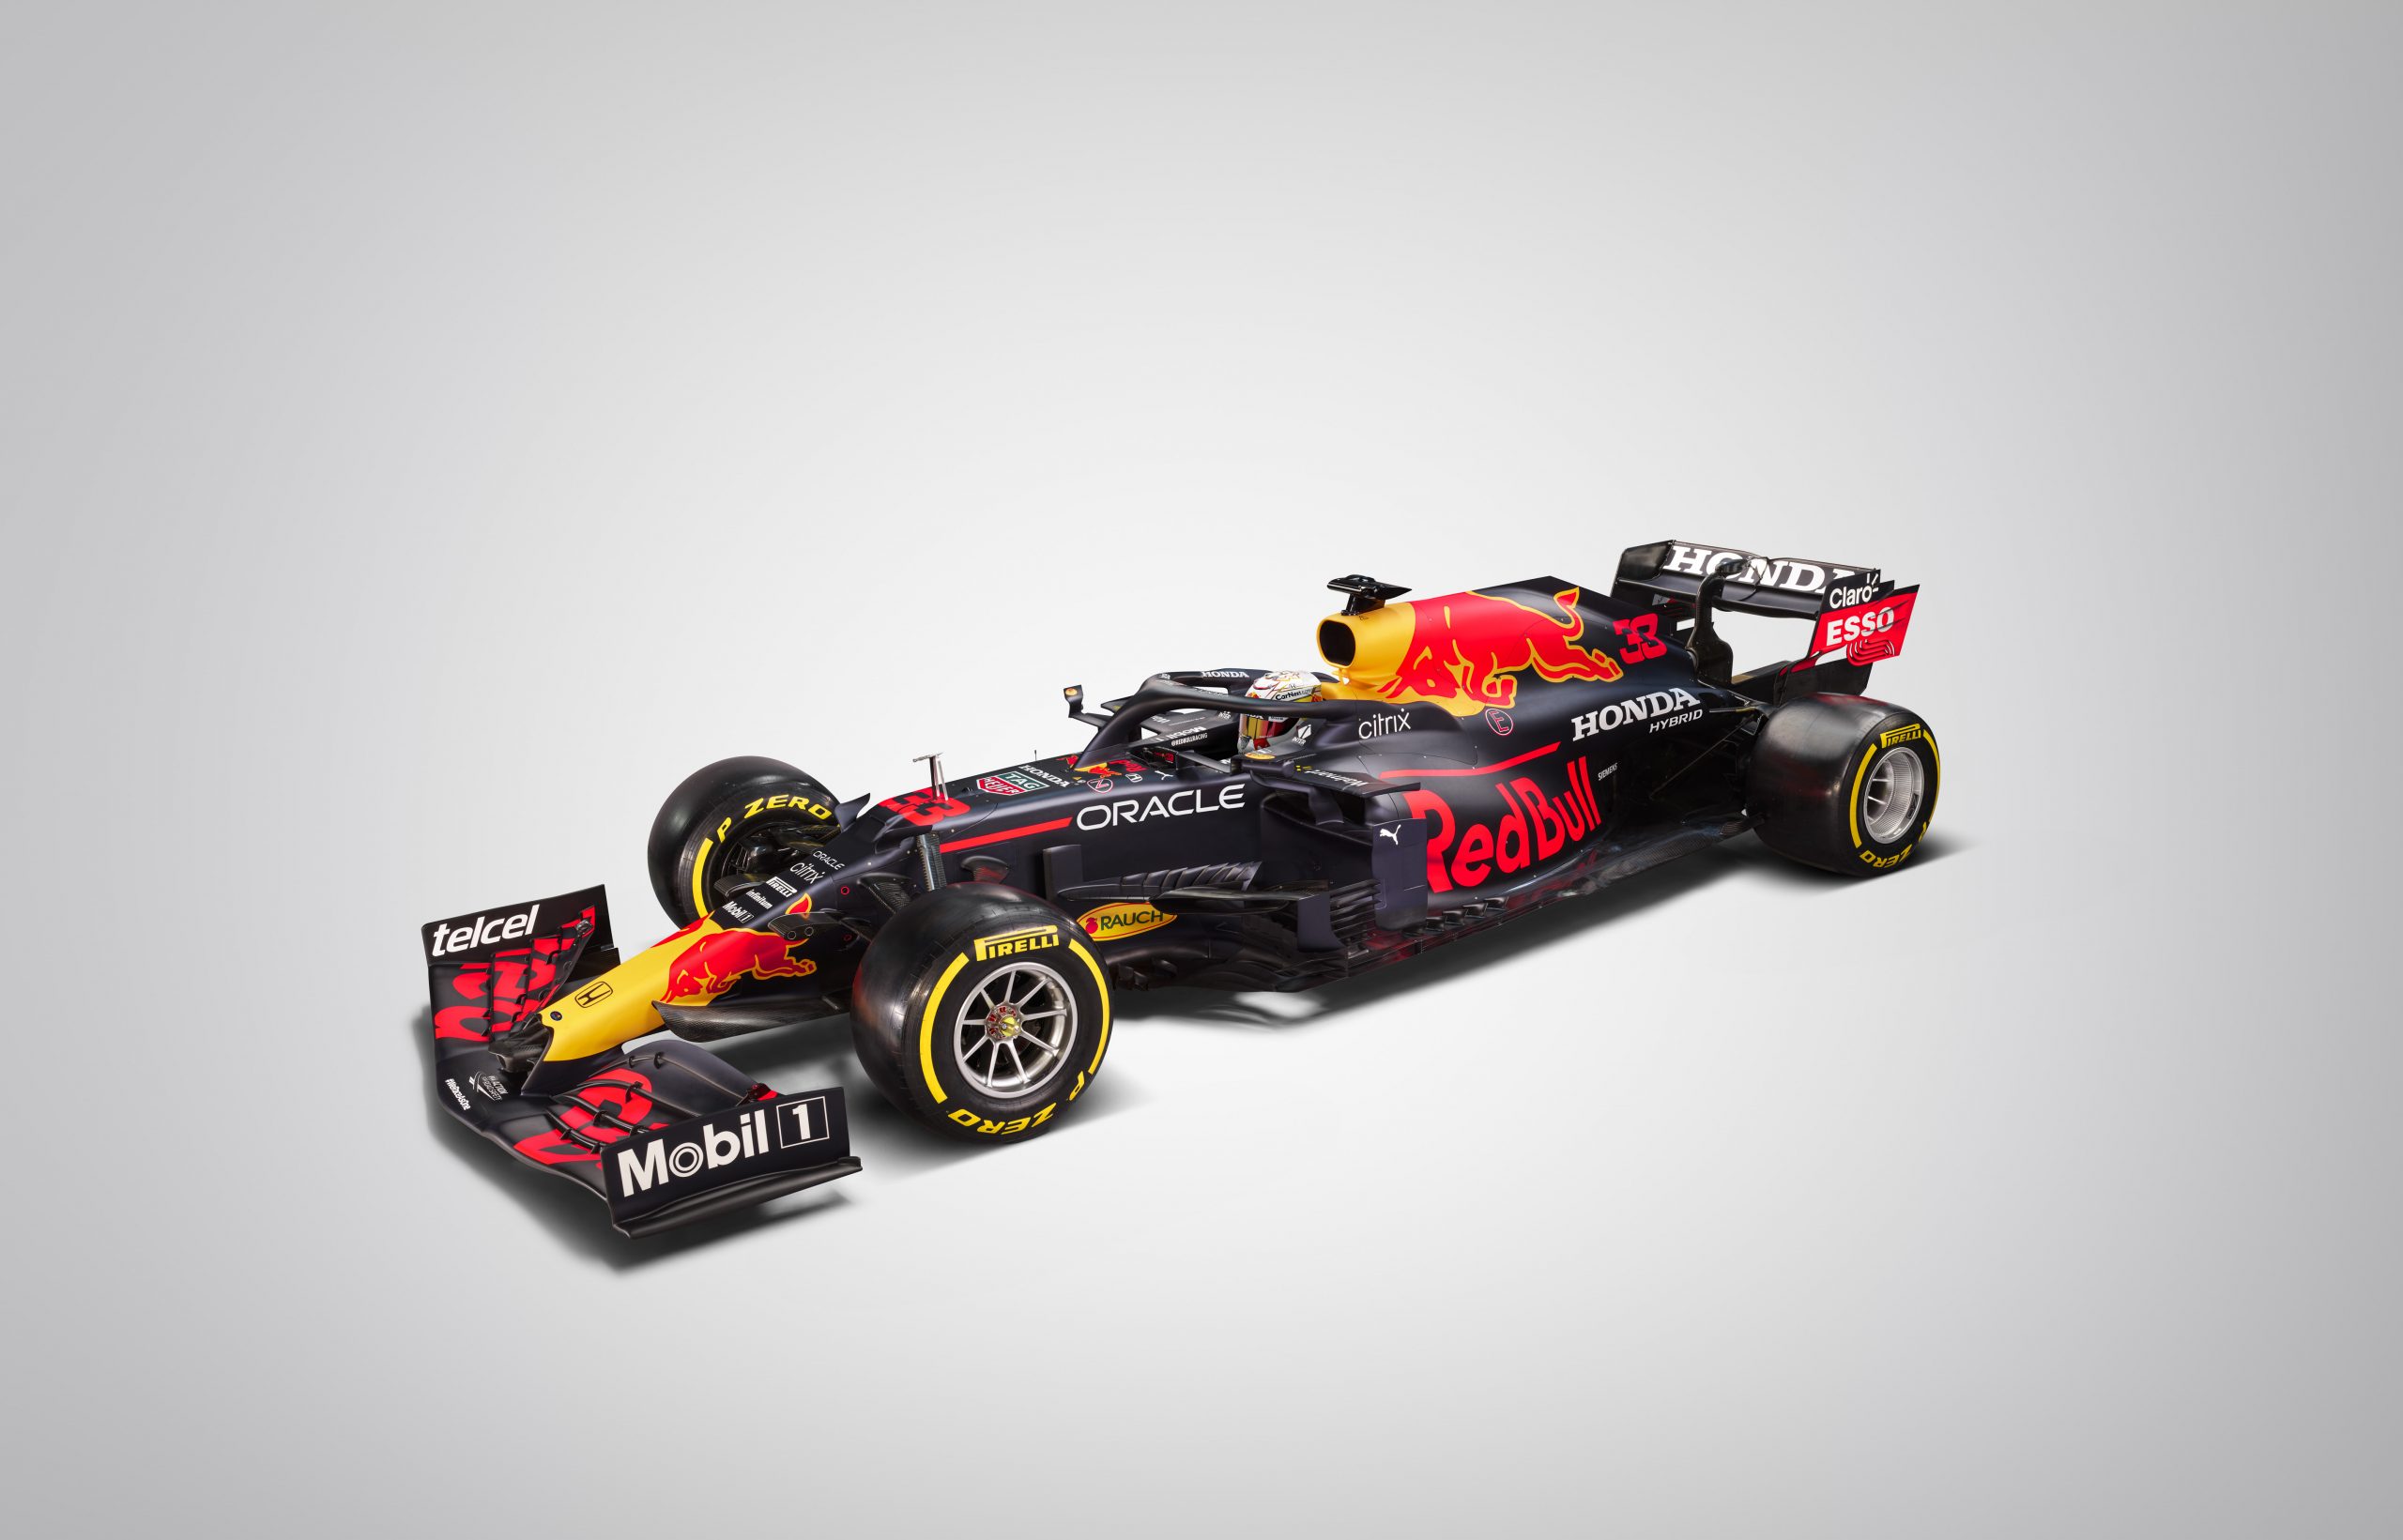 Red Bull Racing 2021